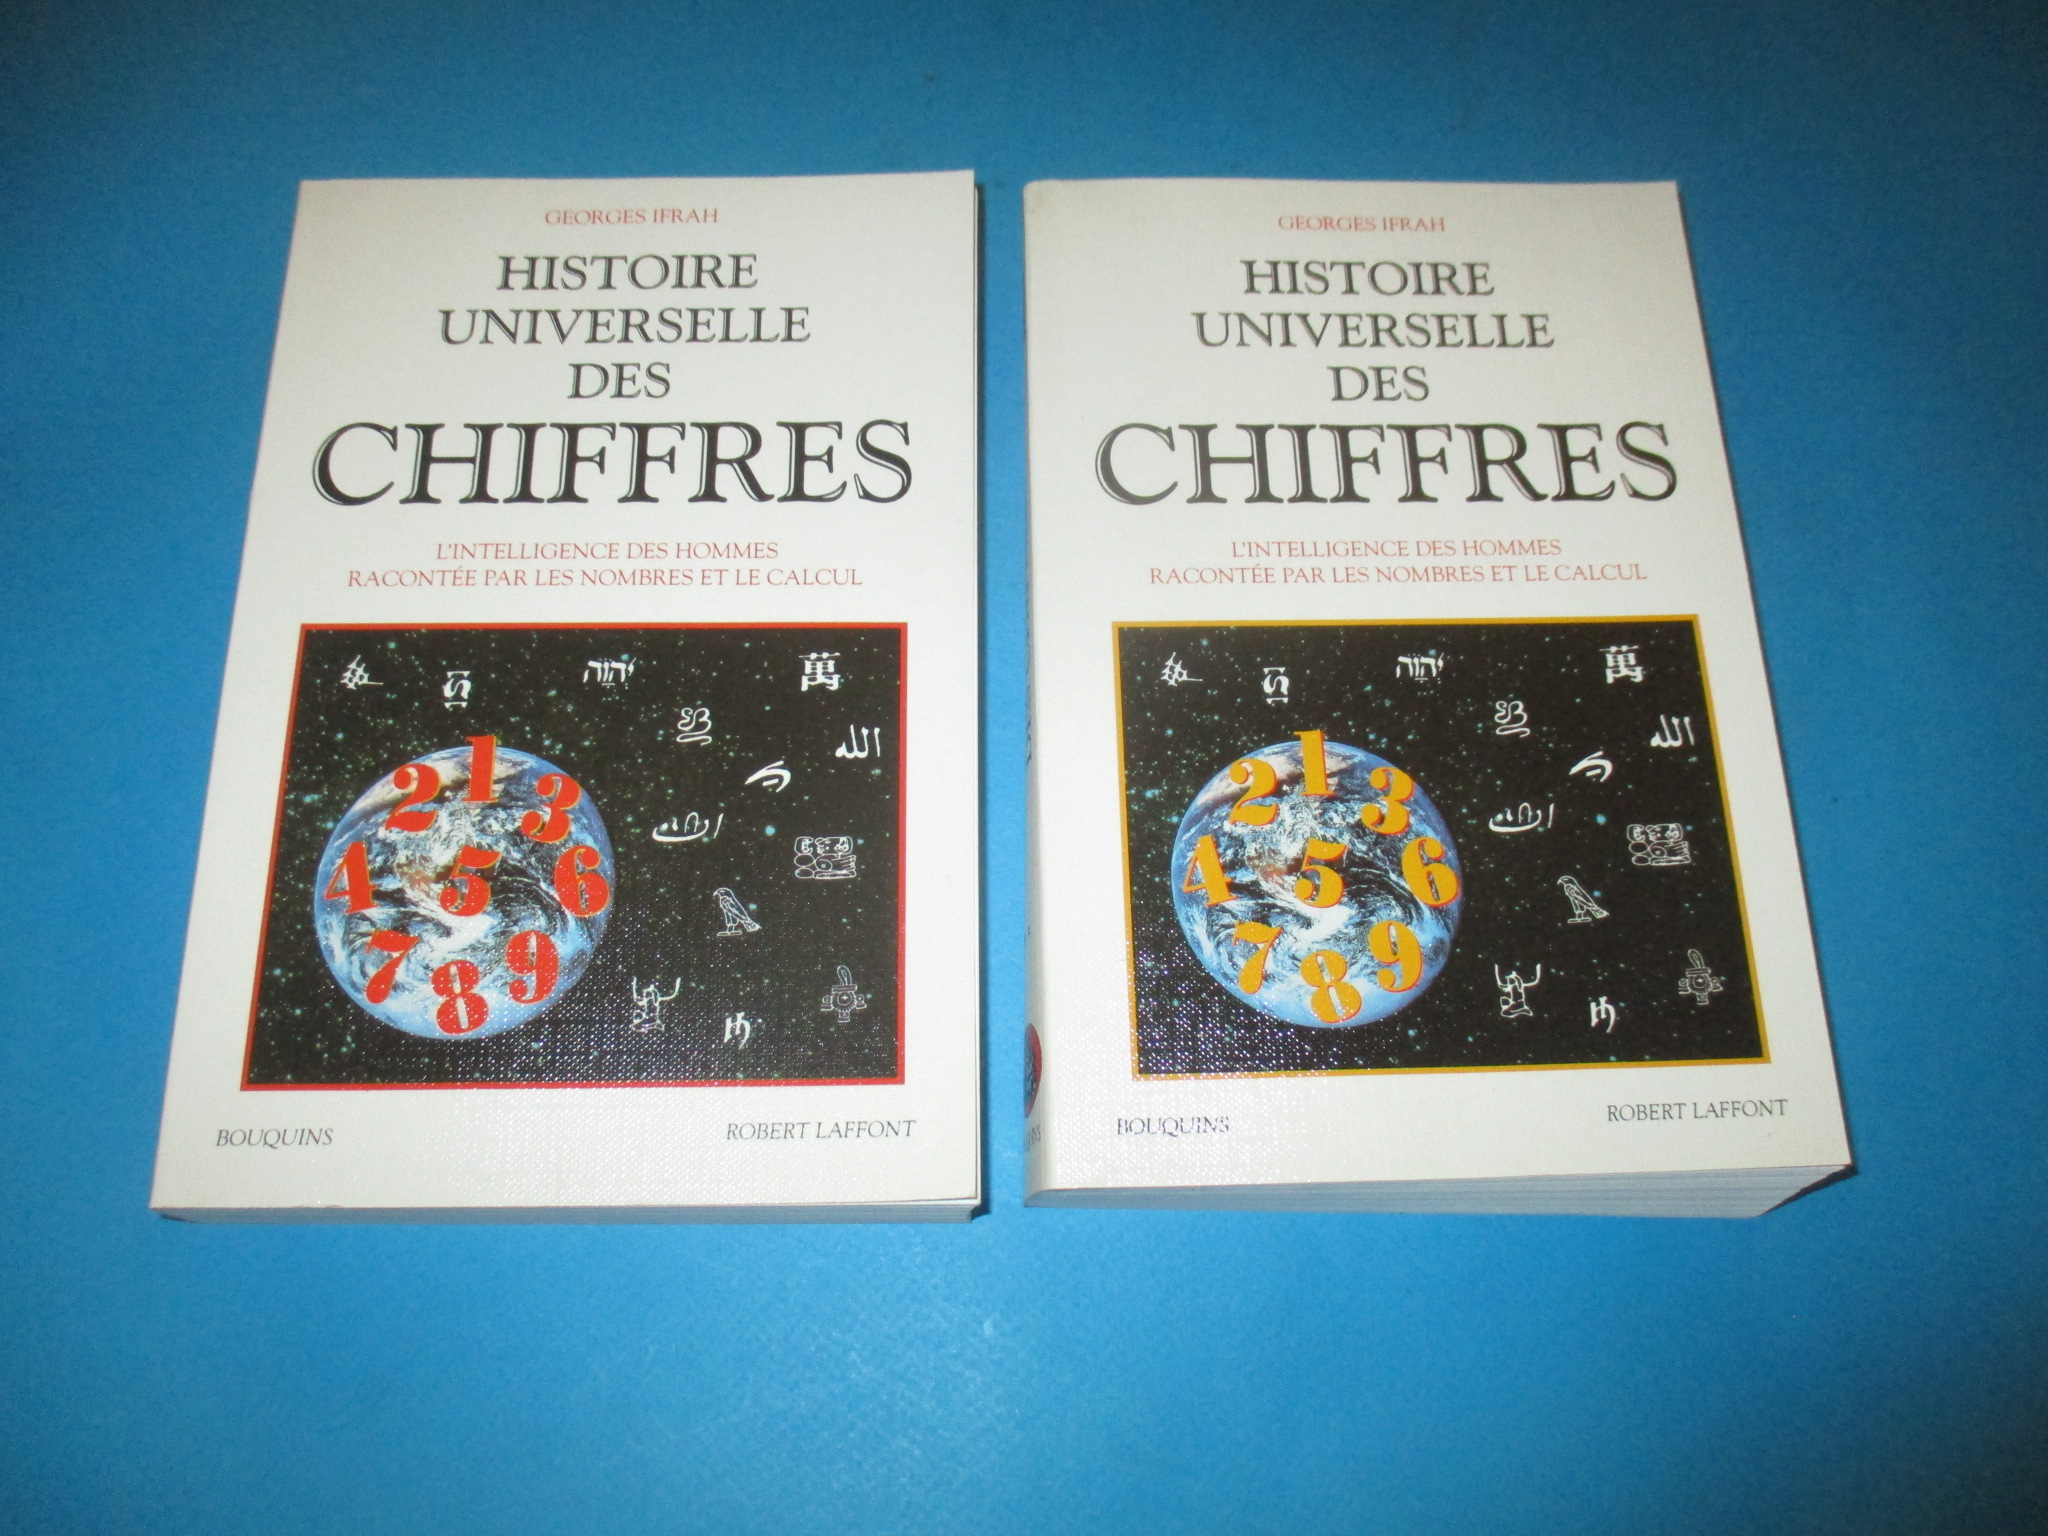 Histoire universelle des chiffres en 2 volumes, Georges Ifrah, tomes 1 & 2, Bouquins Robert Laffont